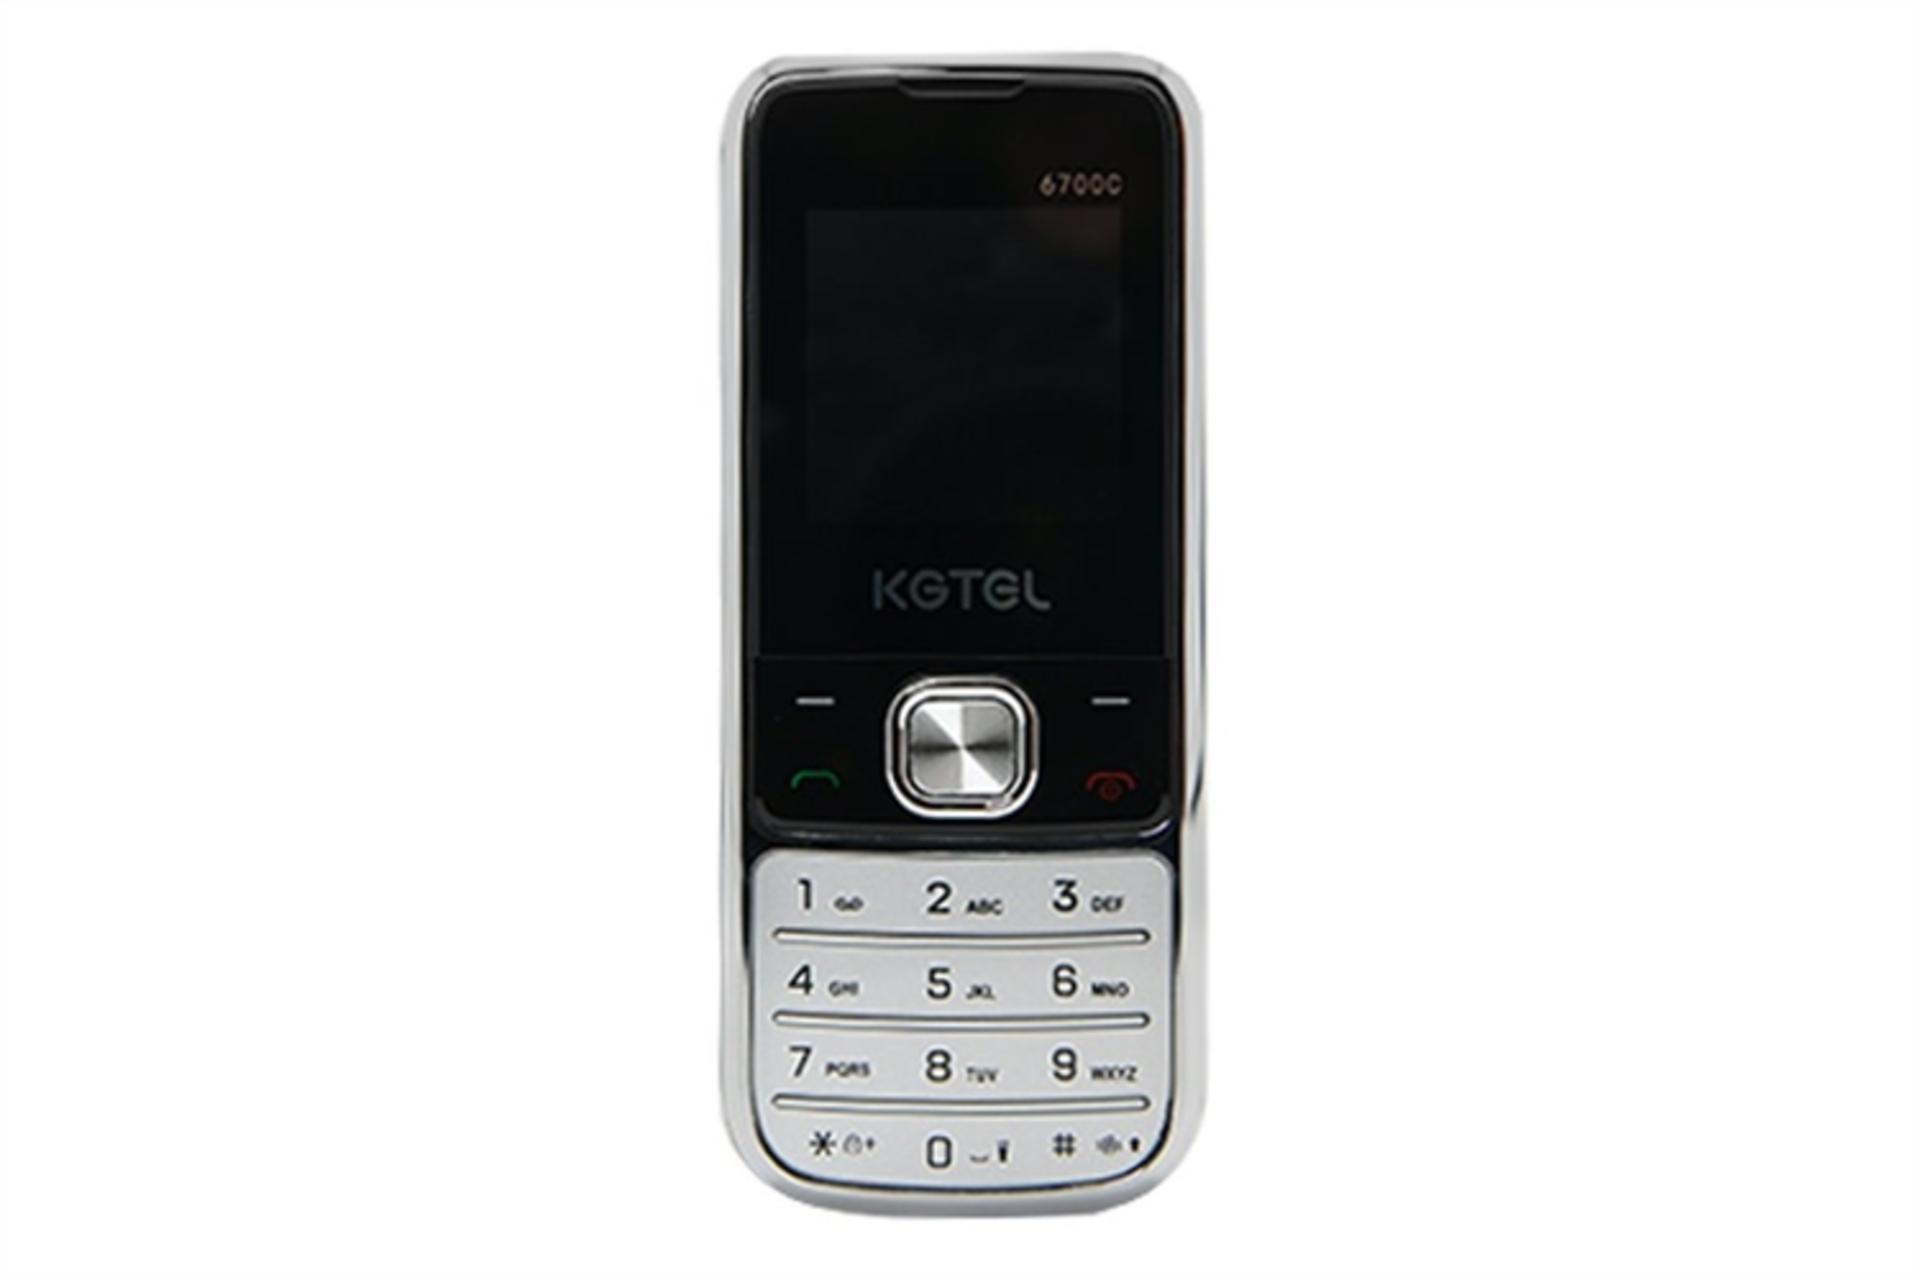 گوشی موبایل کاجیتل KGTEL 6700C نقره ای